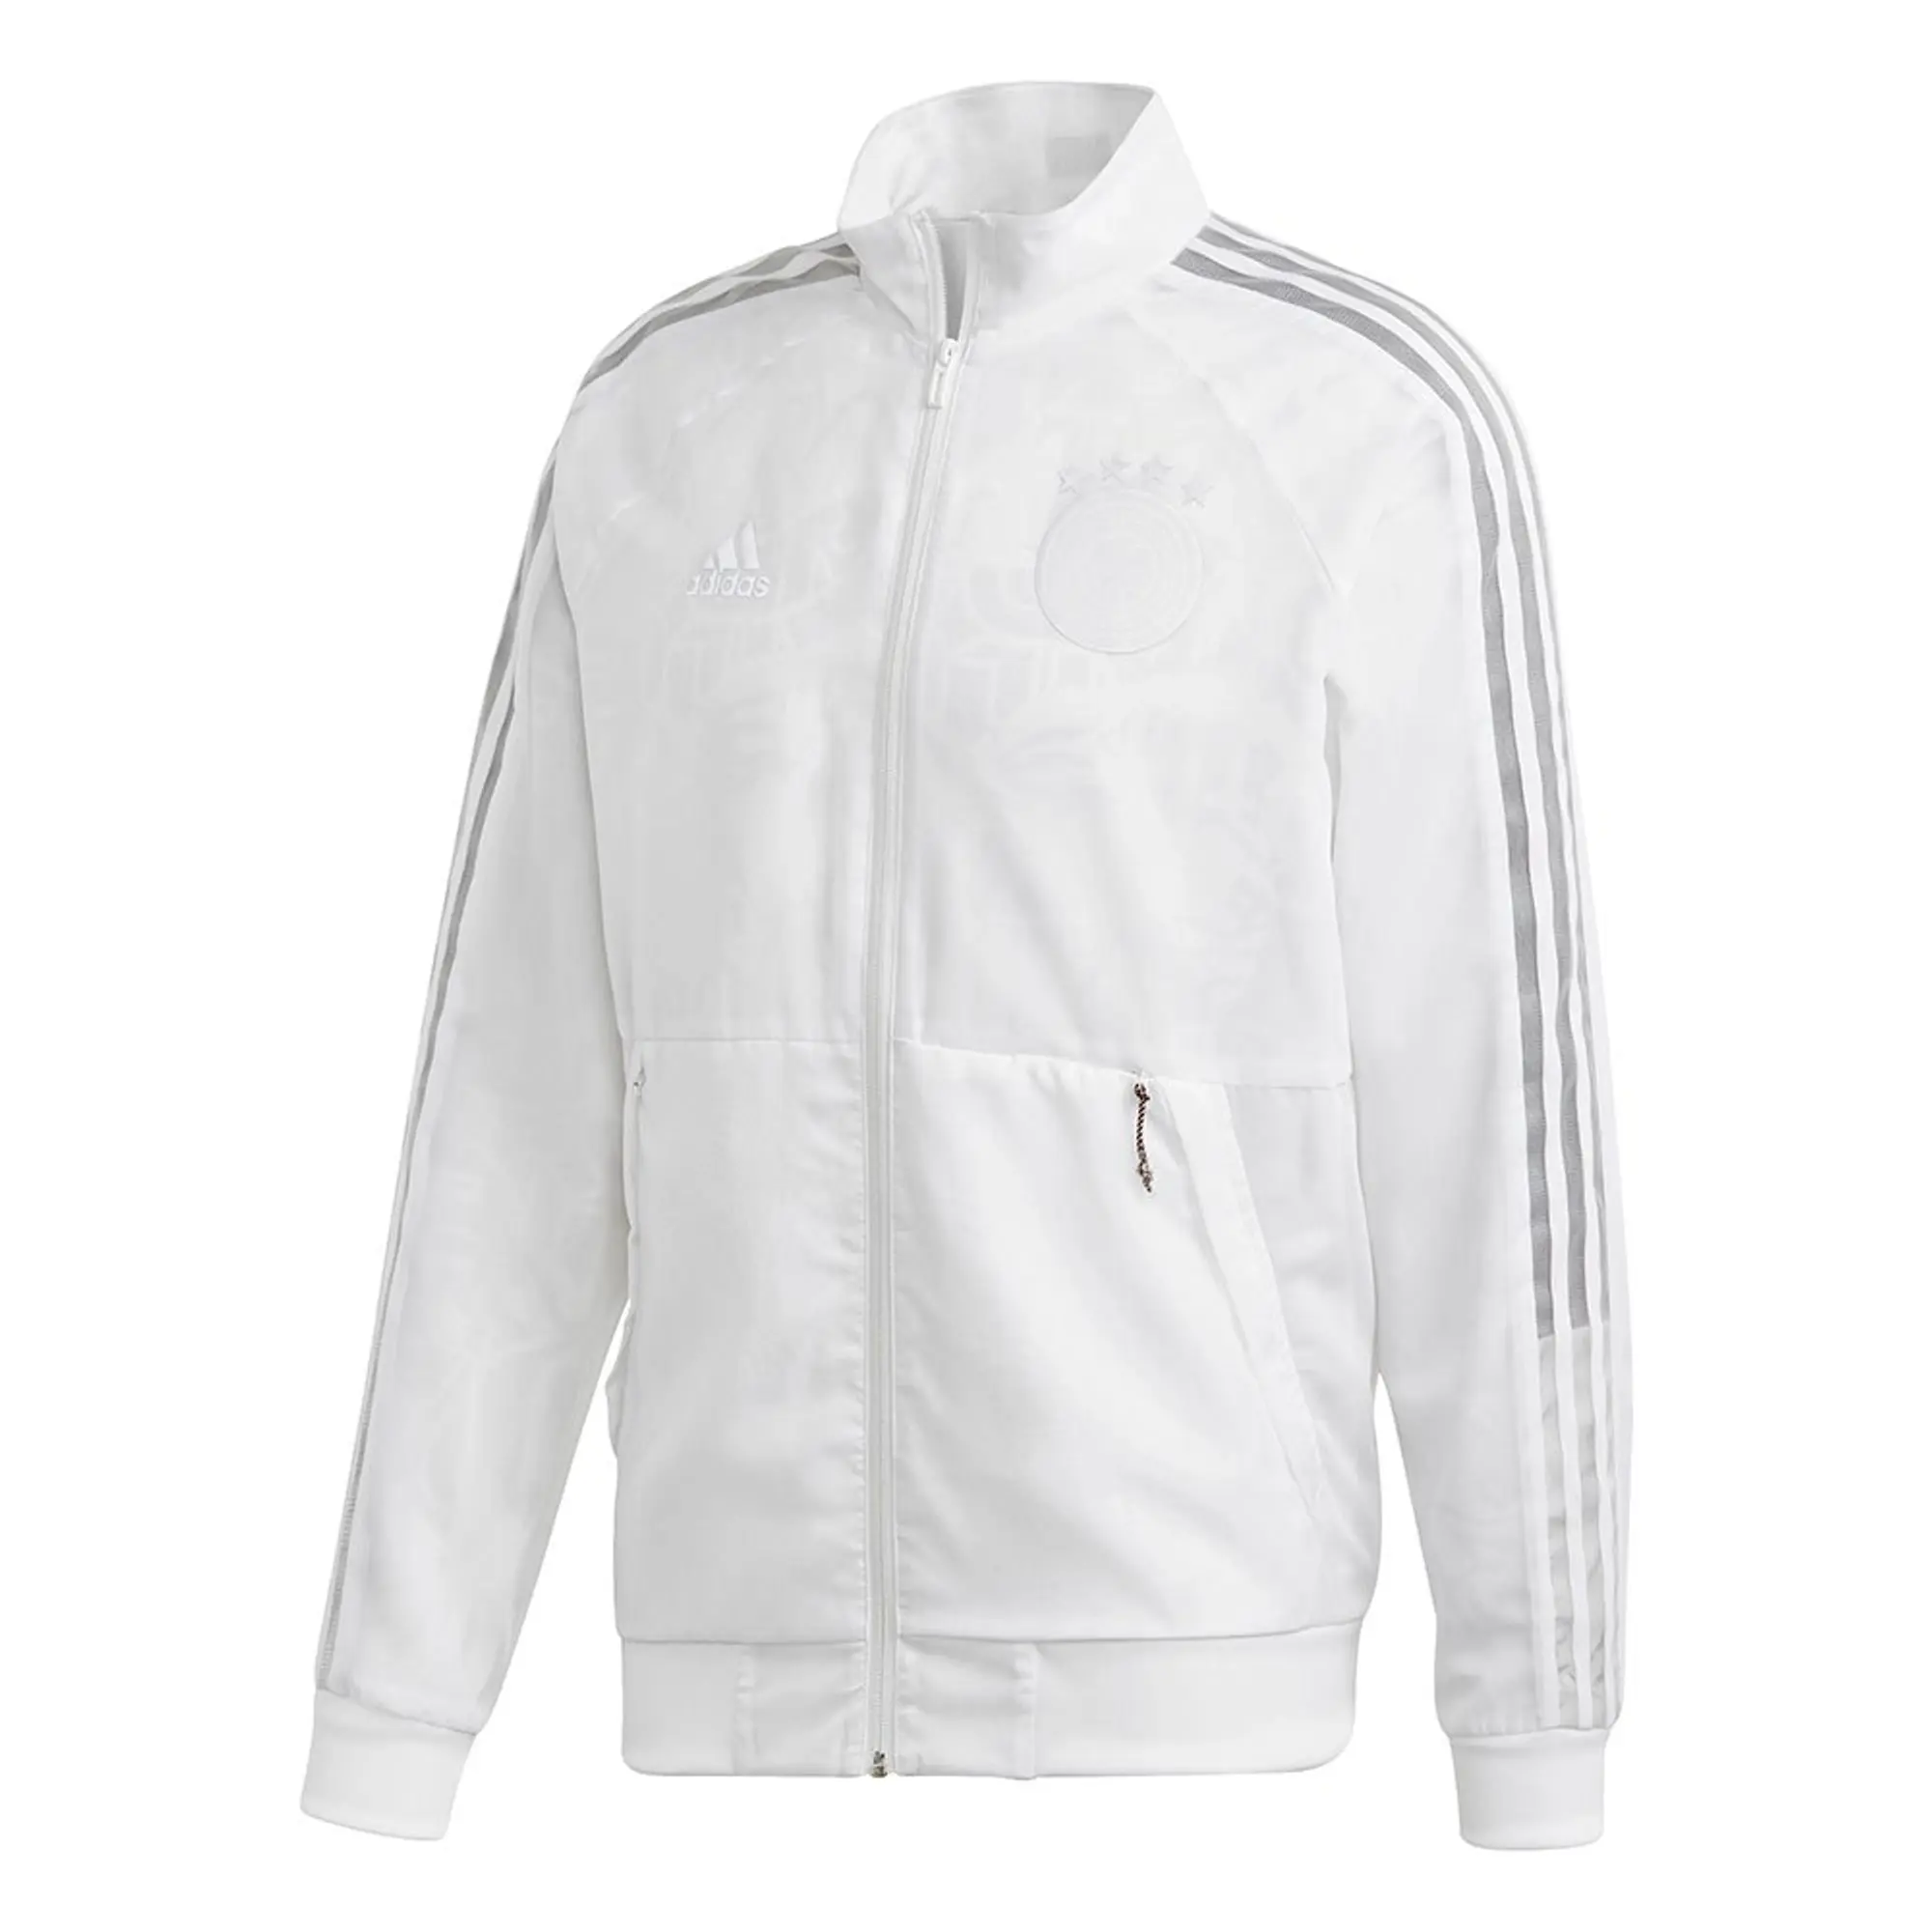 Adidas Germany Uni 2020 Jacket  - White